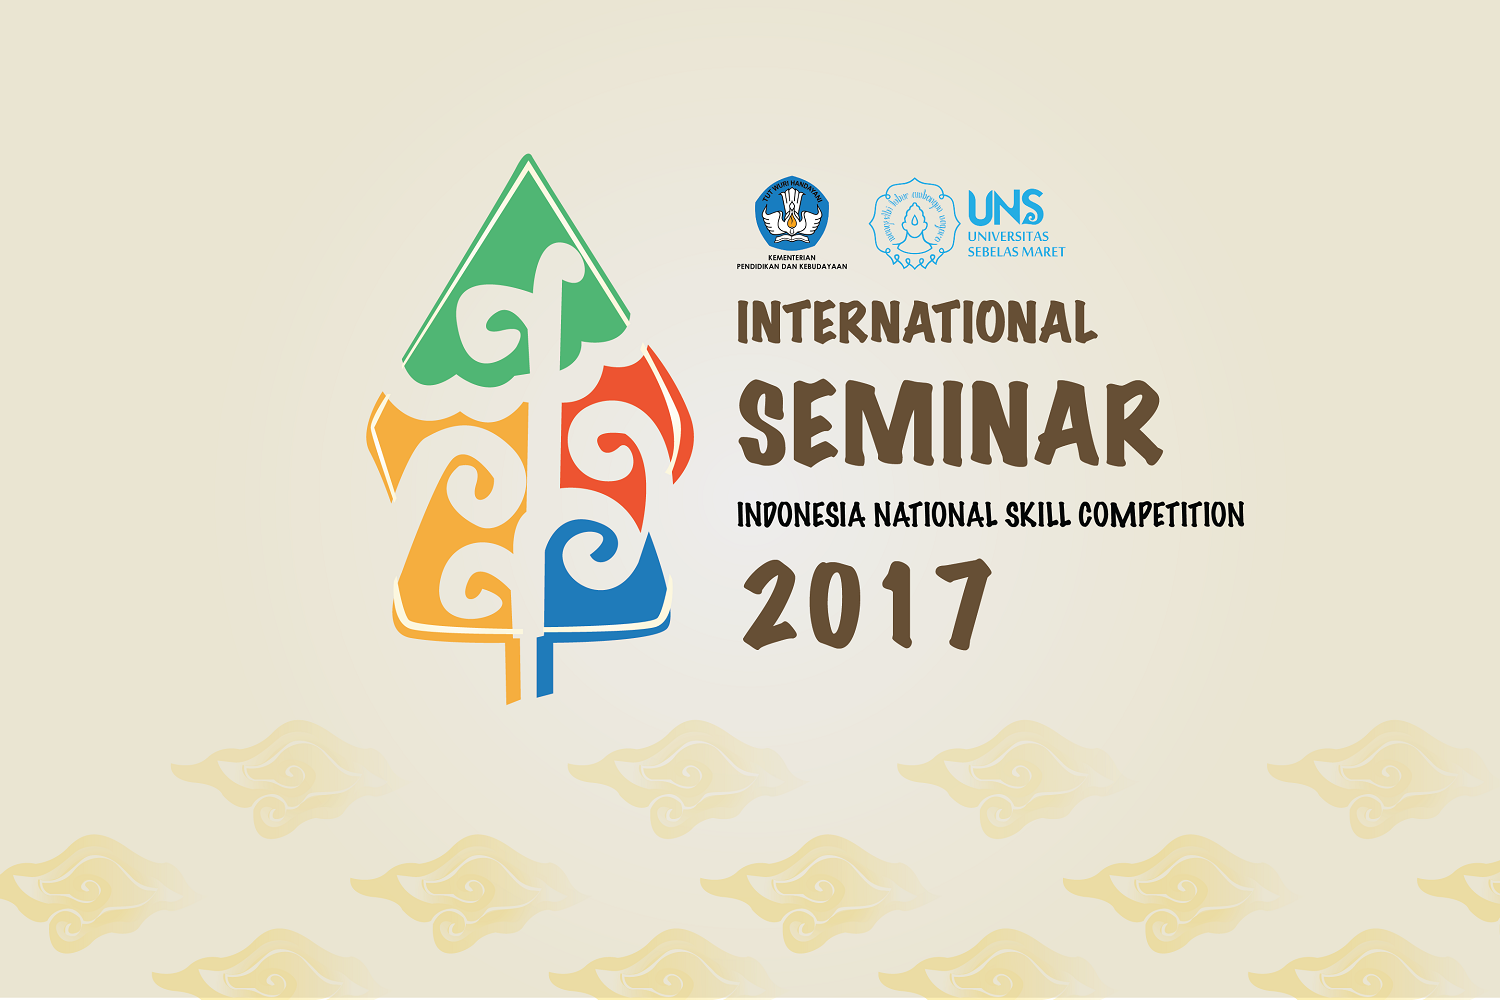 Seminar Internasional Kemendikbud dan UNS Harmonisasi SMK dengan Dunia Kerja